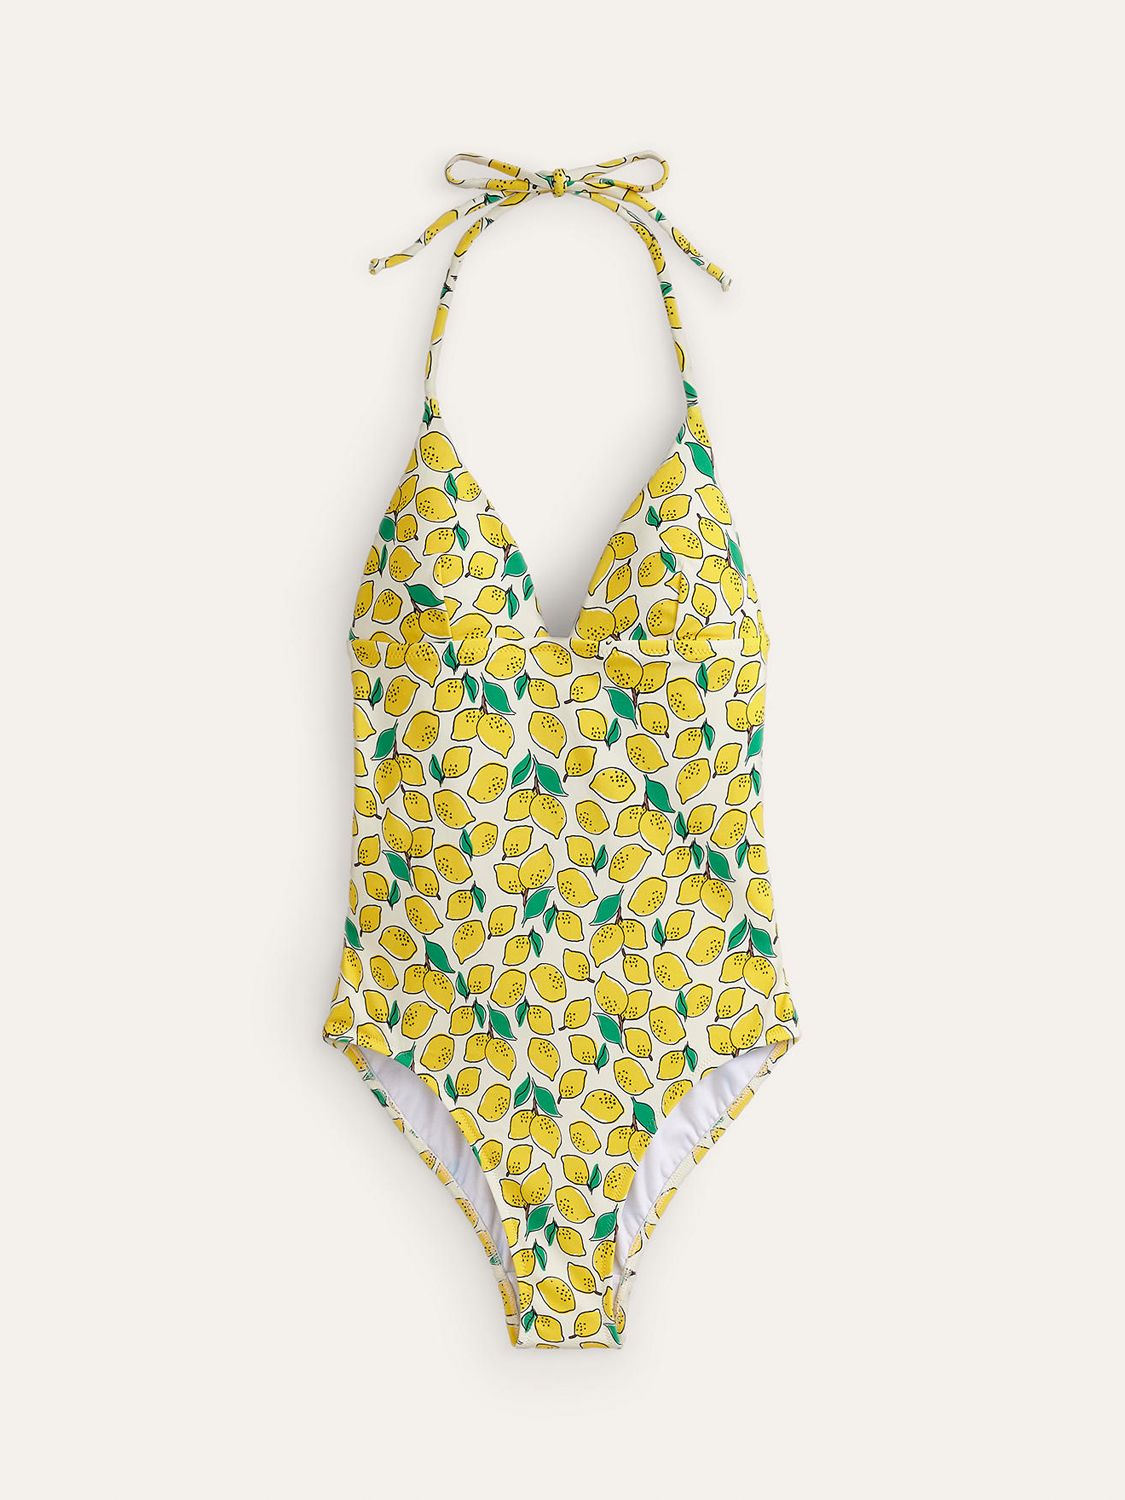 Boden Symi String Lemon Print Swimsuit, Ivory/Multi, 8